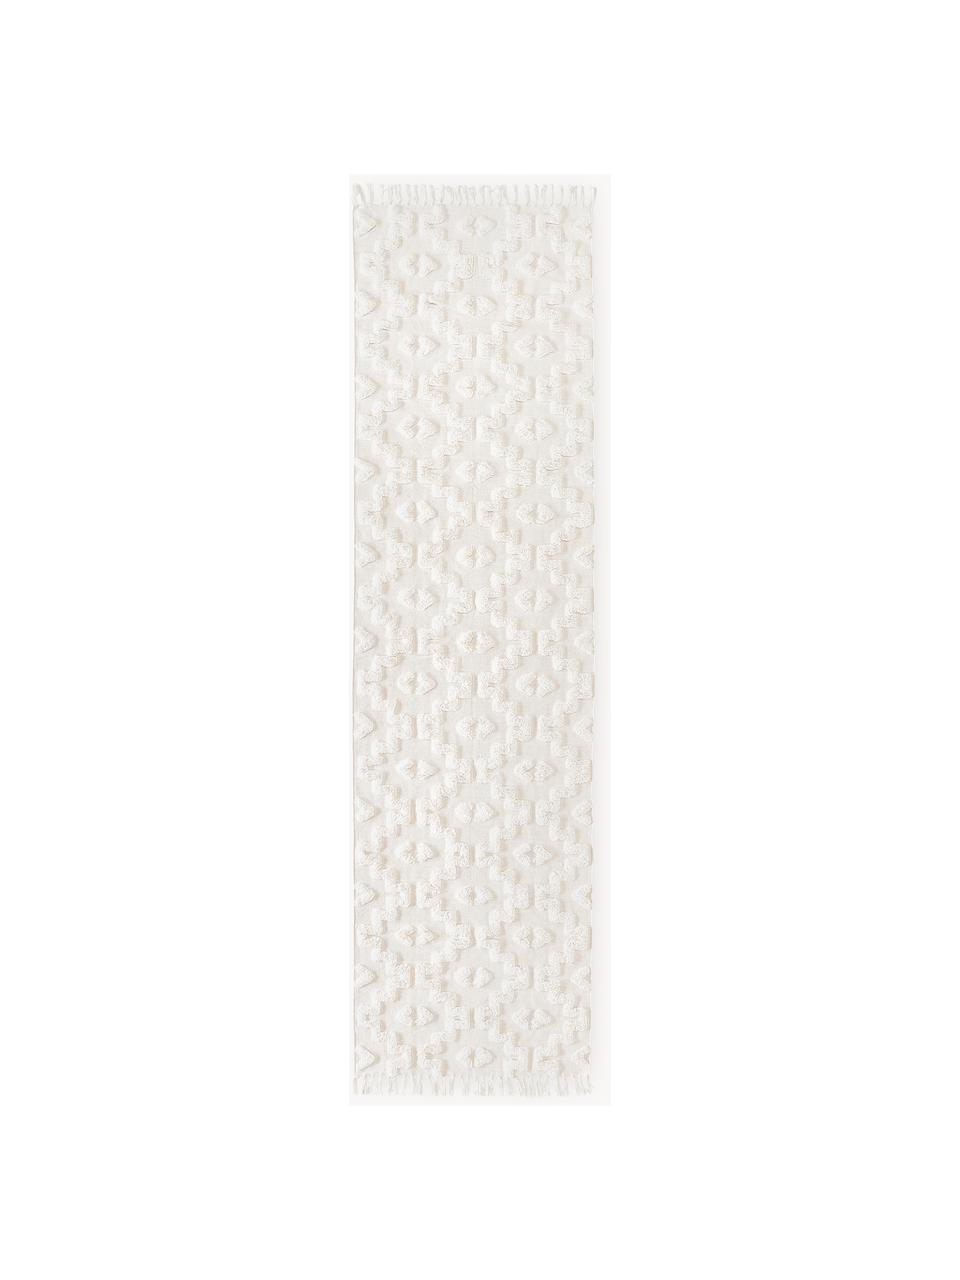 Handgewebter Baumwollläufer Idris mit erhabener Hoch-Tief-Struktur, 100% Baumwolle, Cremeweiß, B 80 x L 200 cm